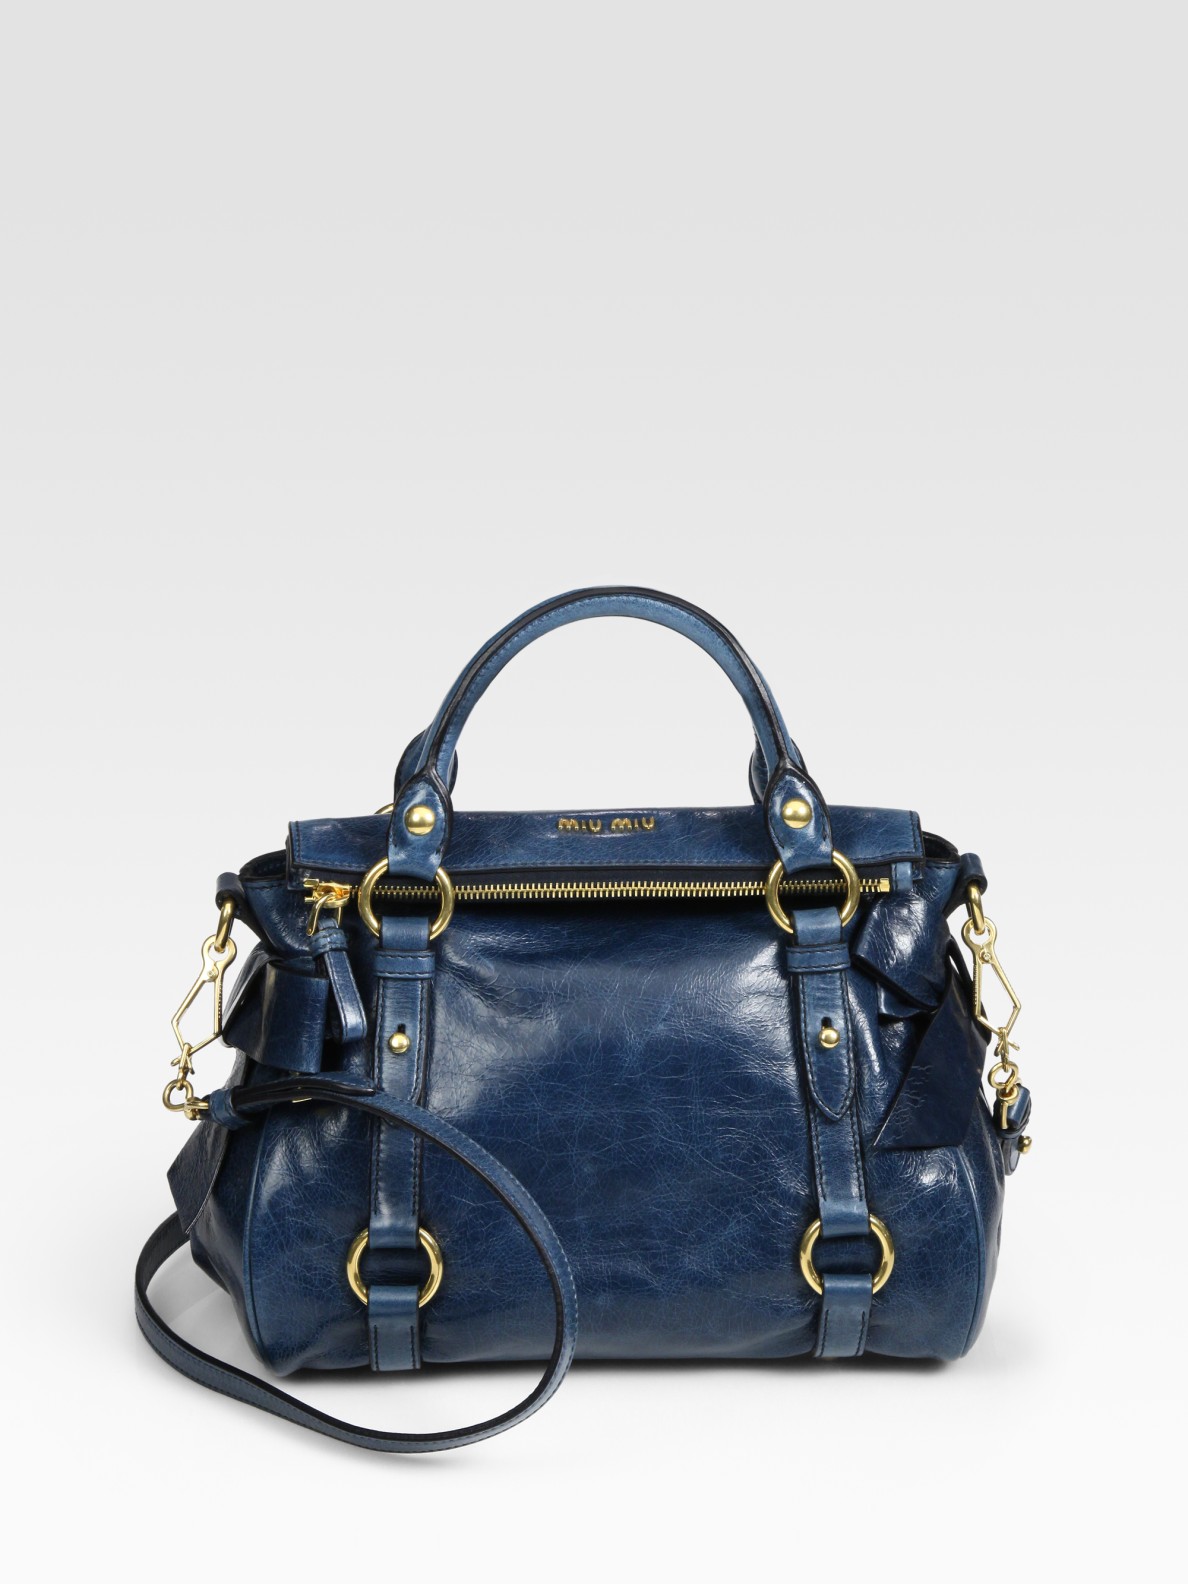 Miu Miu Vitello Lux Mini Bow Bag in Denim (Blue) - Lyst